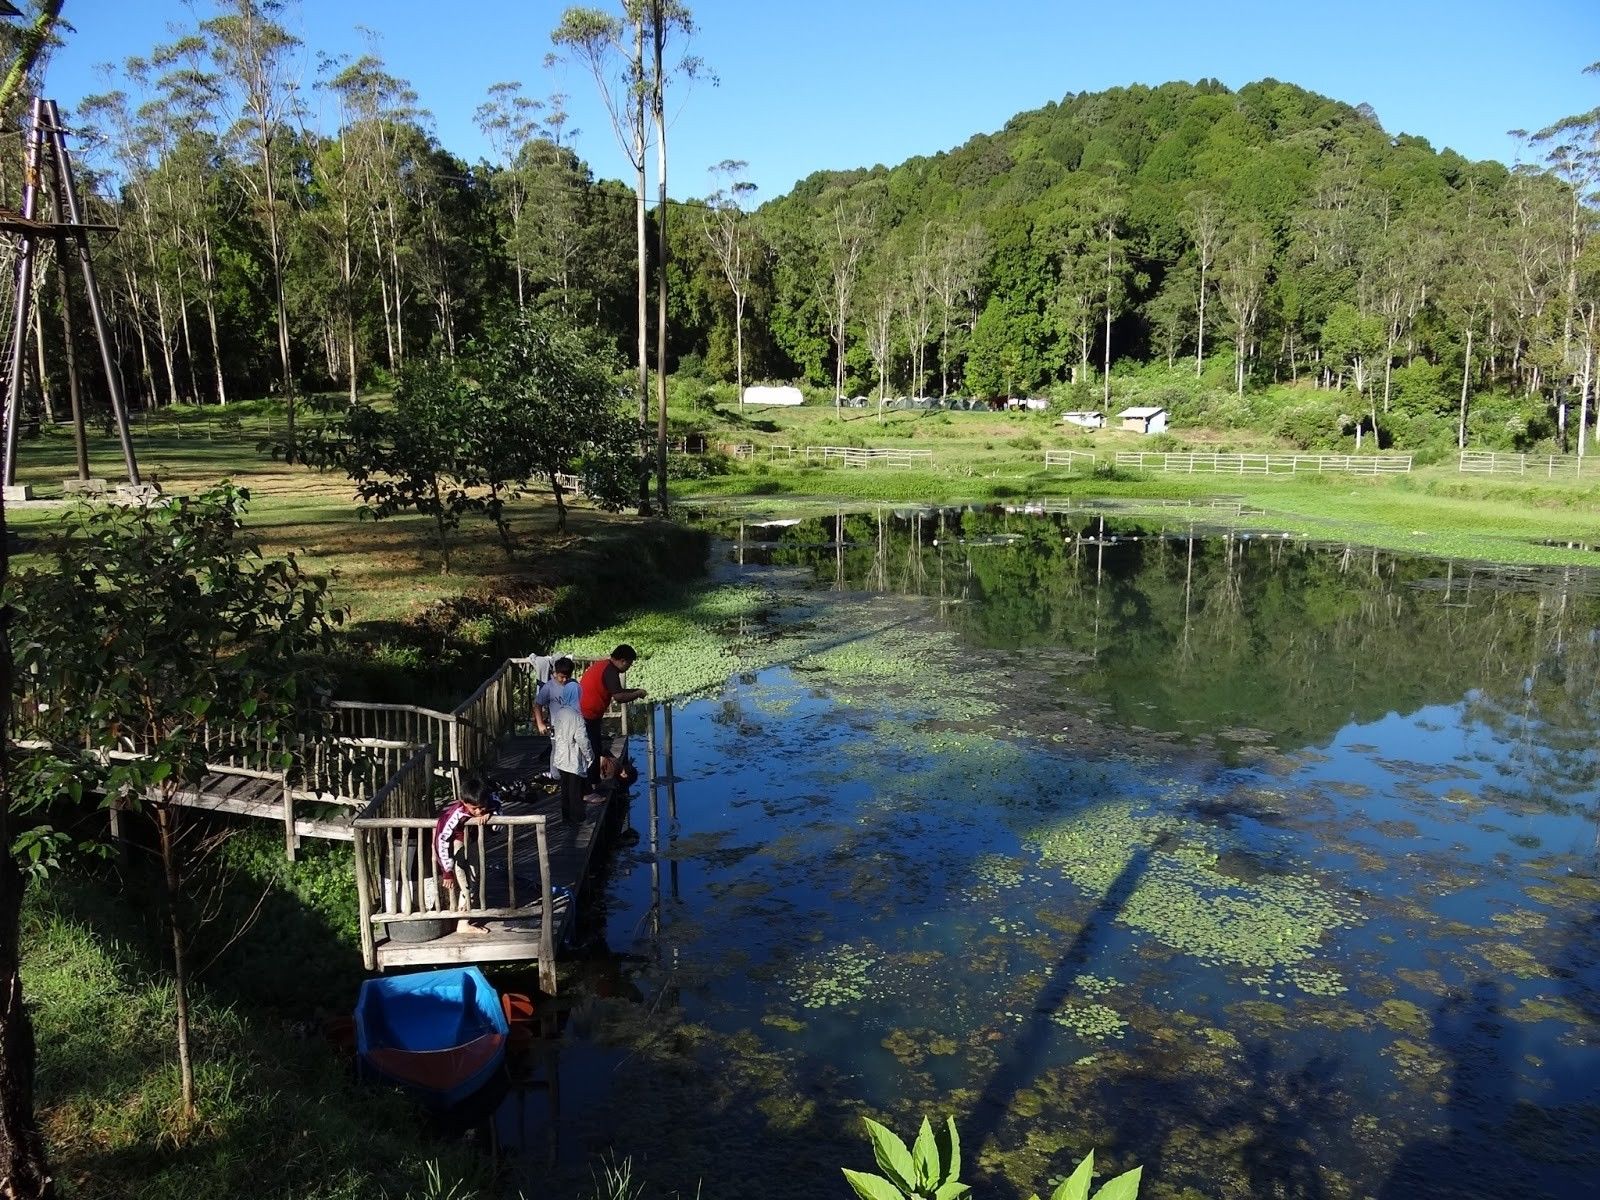 Bikin Hati Tenang Wisata Alam Bandung Ini Wajib Kamu Kunjungi